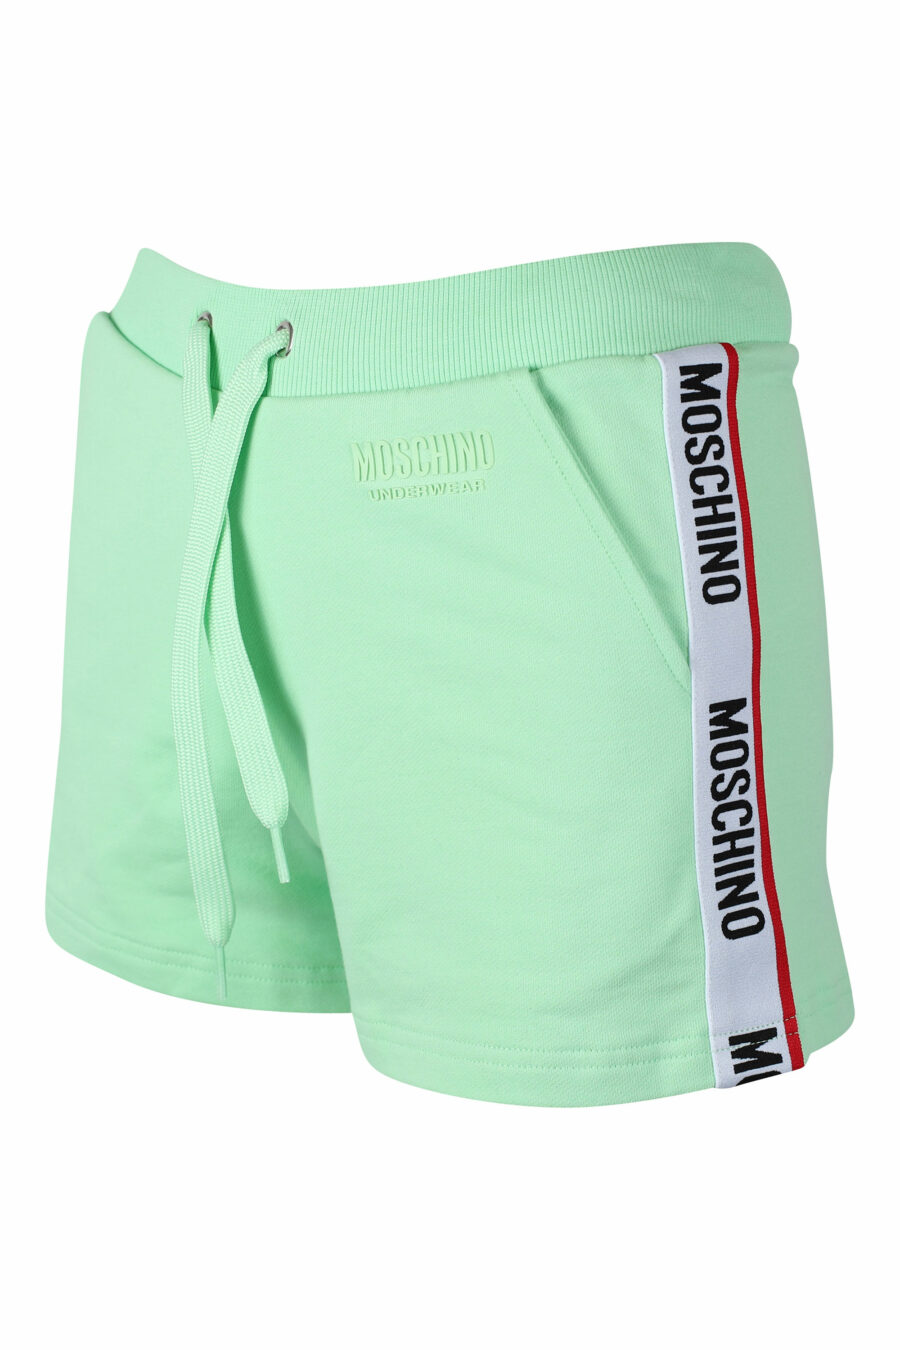 Pantalón de chándal corto verde menta con logo oso underbear - IMG 2298